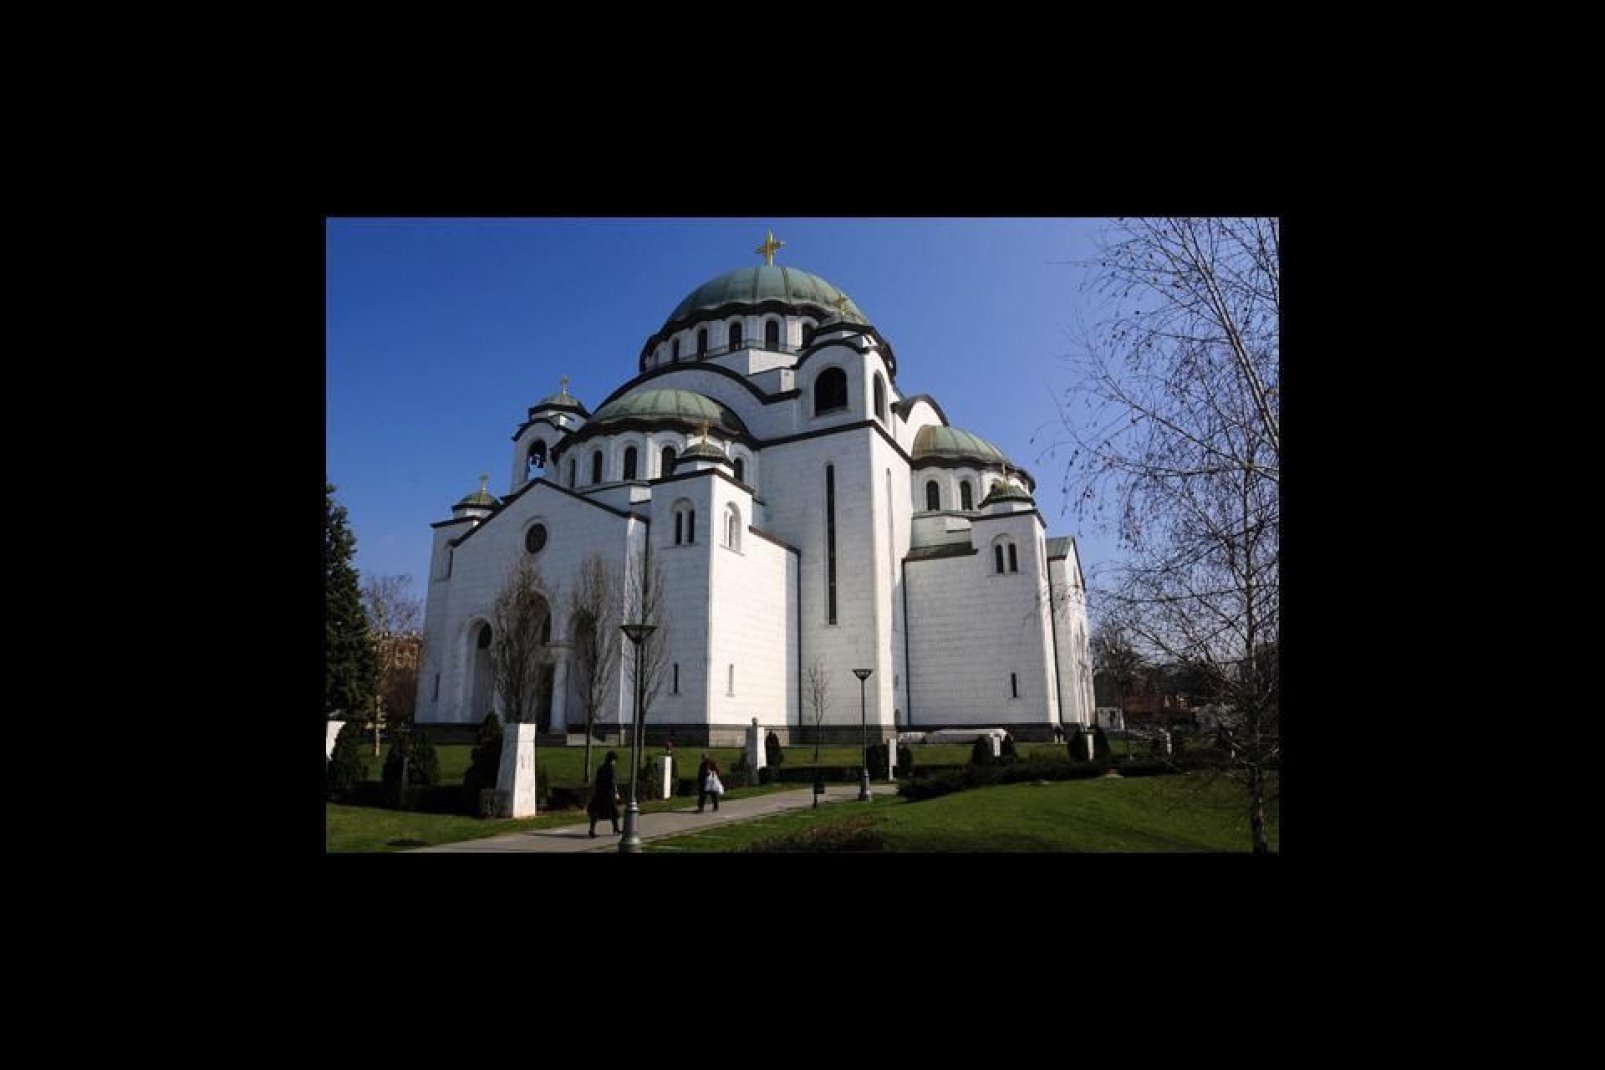 Der Tempel des Heiligen Sava, ein Meisterwerk und bedeutendstes Bauwerk Belgrads, ist eine Nachbildung der Hagia Sophia und nach der Moskauer Christ-Erlser-Kathedrale das weltweit zweitgrte orthodoxe Gotteshaus!